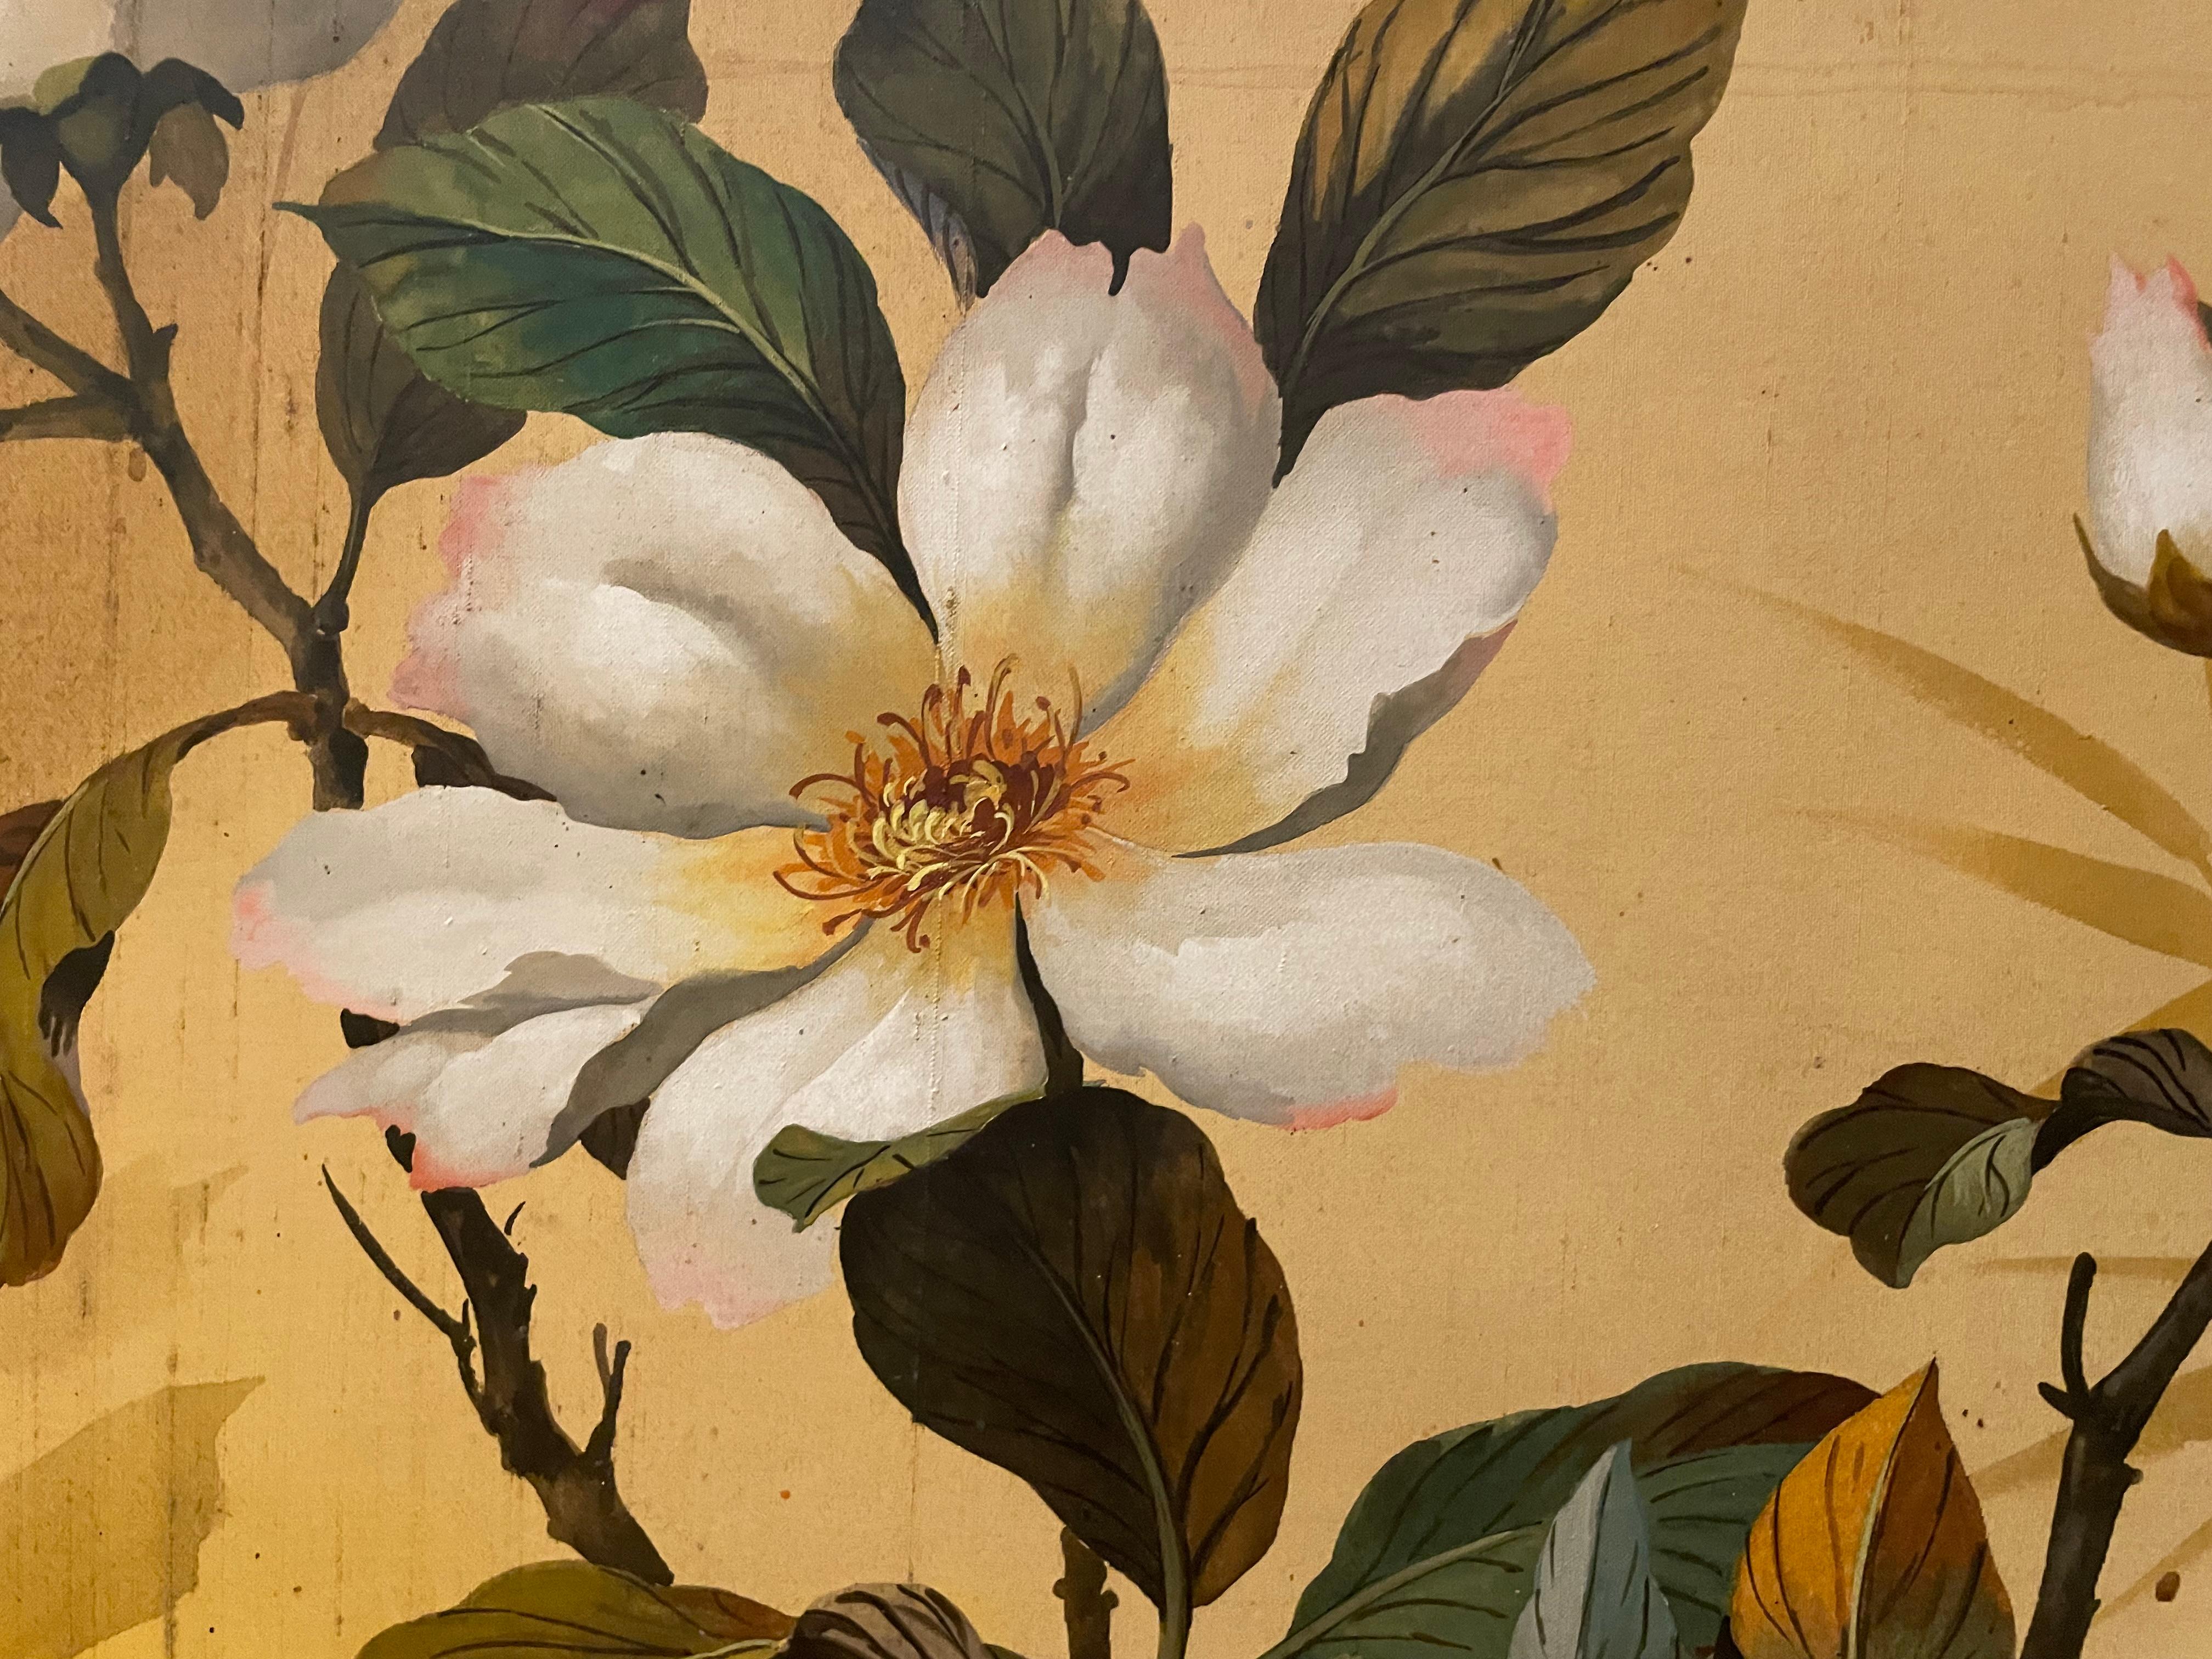 Singvögel zwischen den Blüten – Painting von Kee Wu Wah